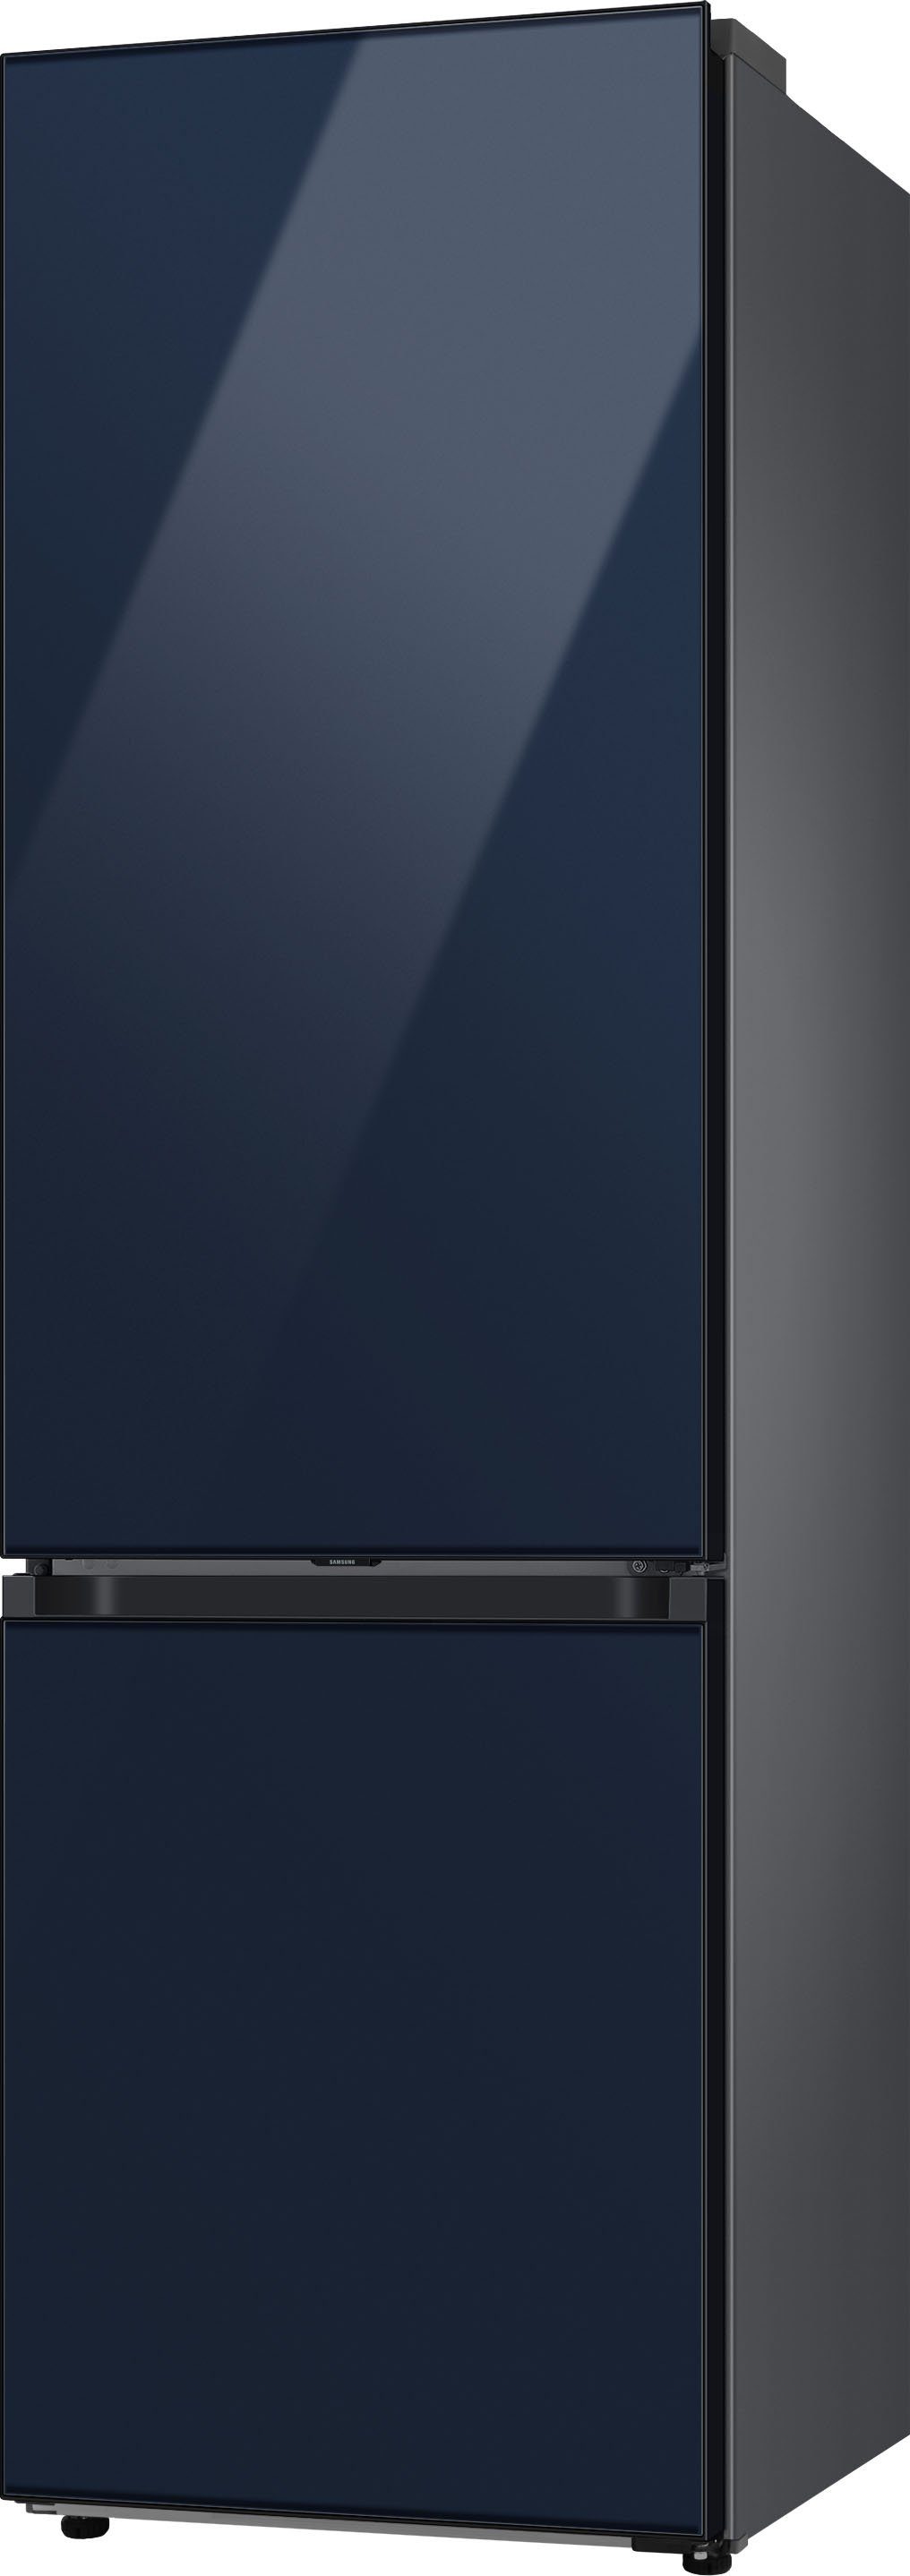 Samsung Kühl-/Gefrierkombination Bespoke RL38A6B6C41, cm 203 59,5 breit hoch, cm